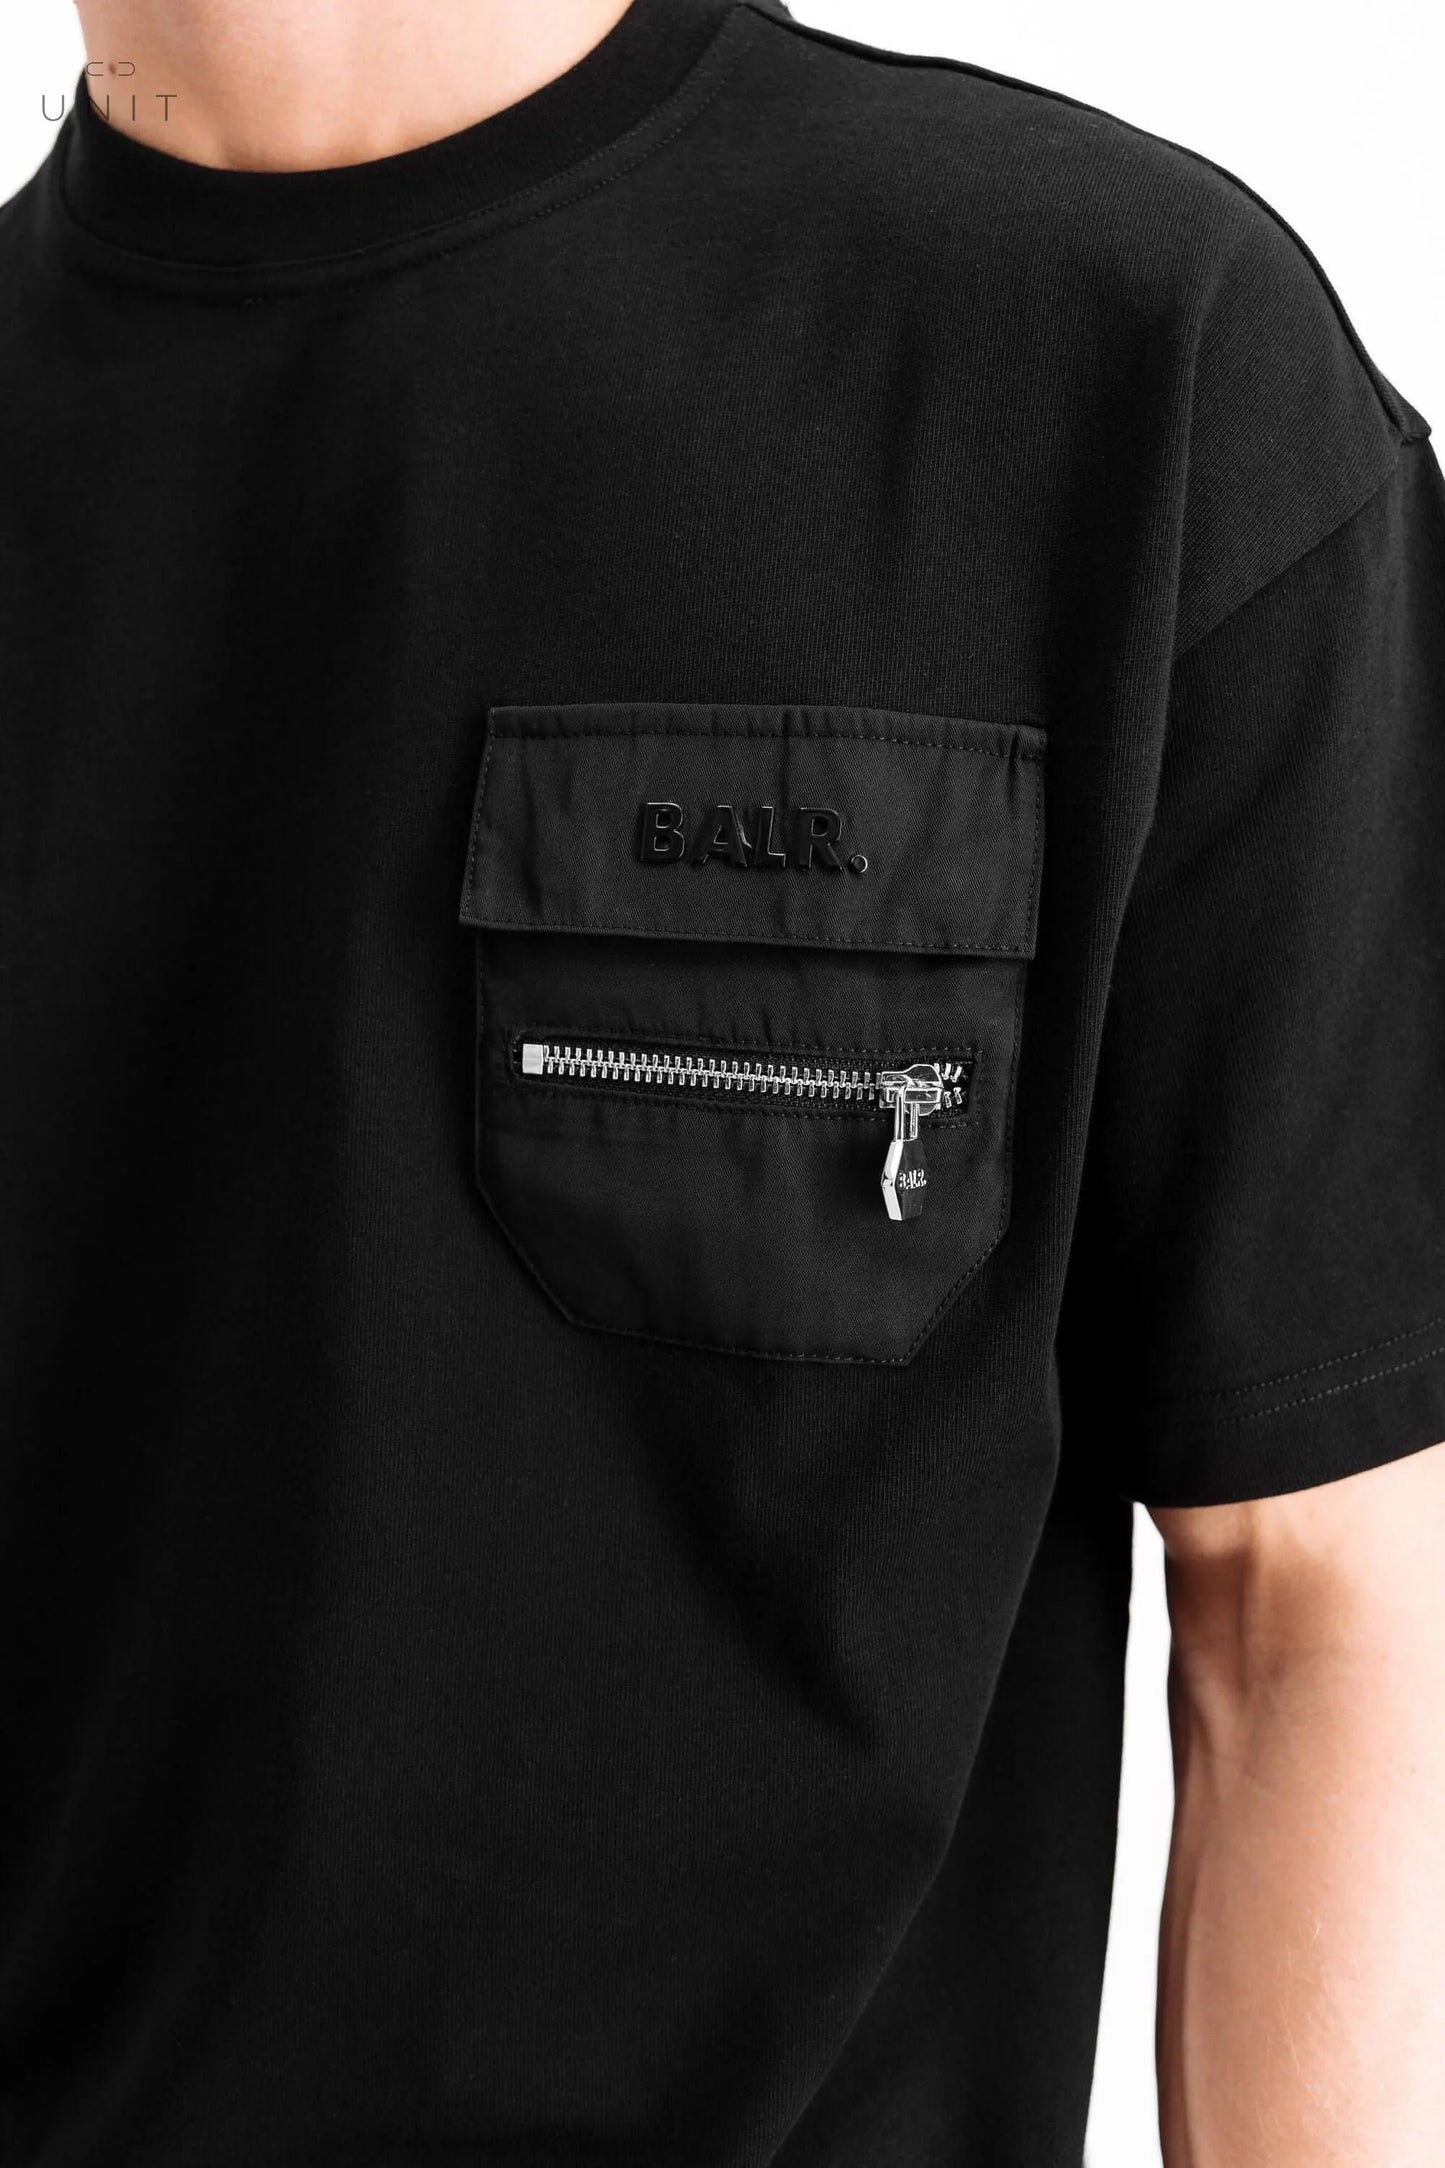 Detailaufnahme BALR. Herren T-Shirt Brand Athletic, schwarz, online only